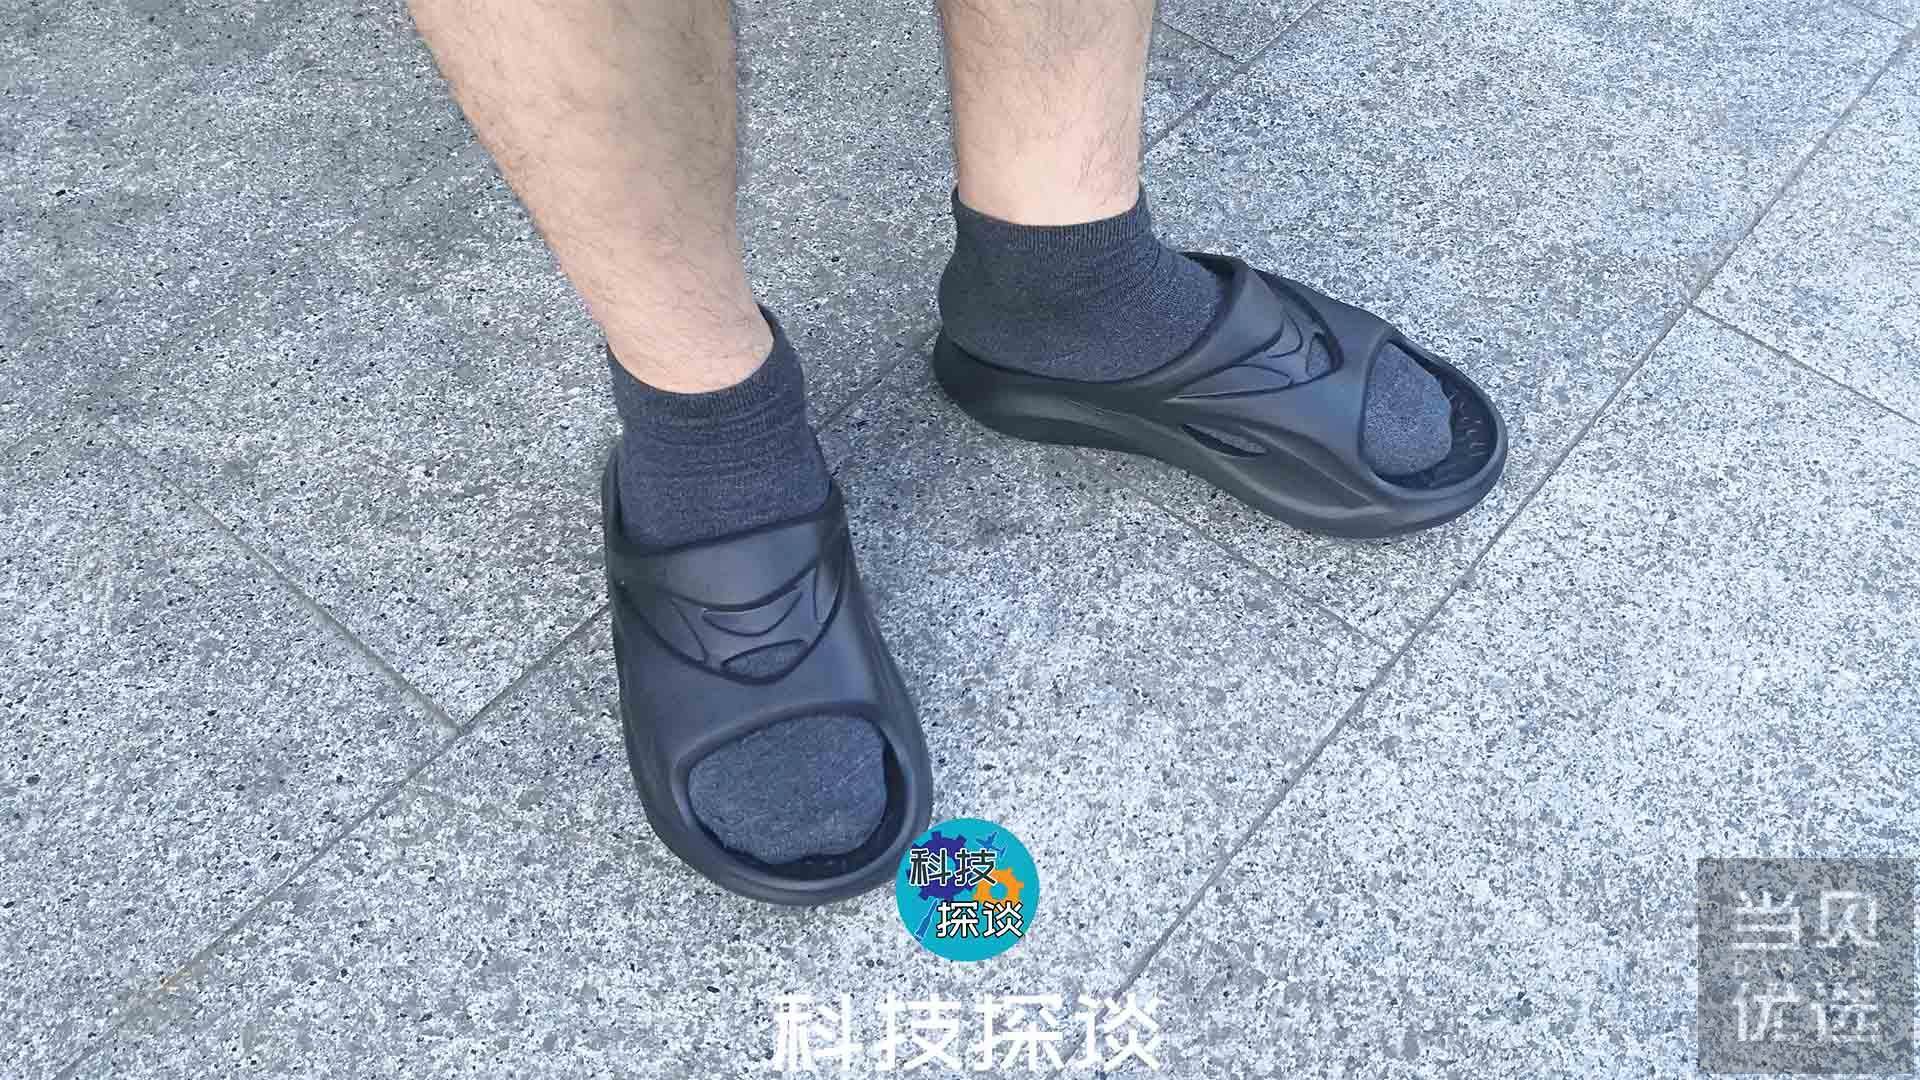 塑料拖鞋_新潮男款滴塑拖鞋 # pvc塑料 工厂直销 - 阿里巴巴